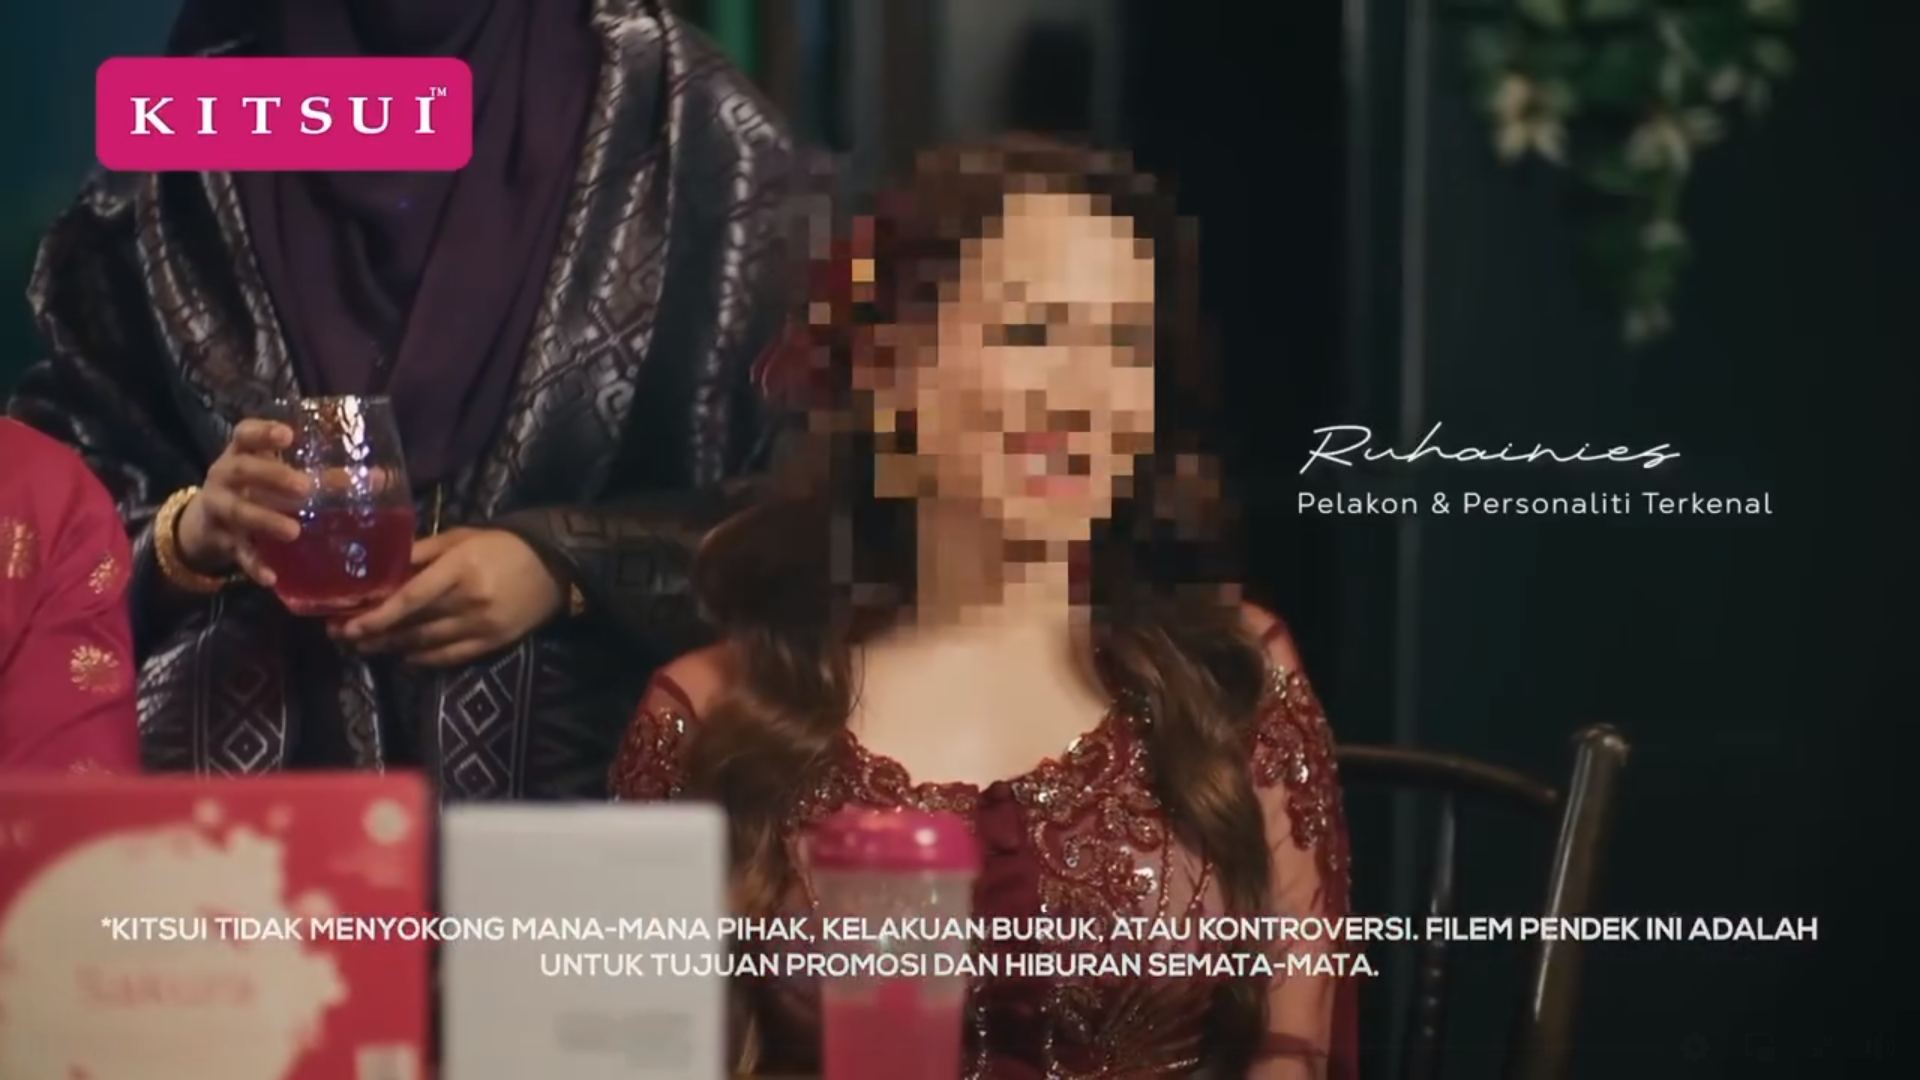 Tak sokong kelakuan buruk, produk kecantikan kaburkan muka Ruhainies dalam iklan 11